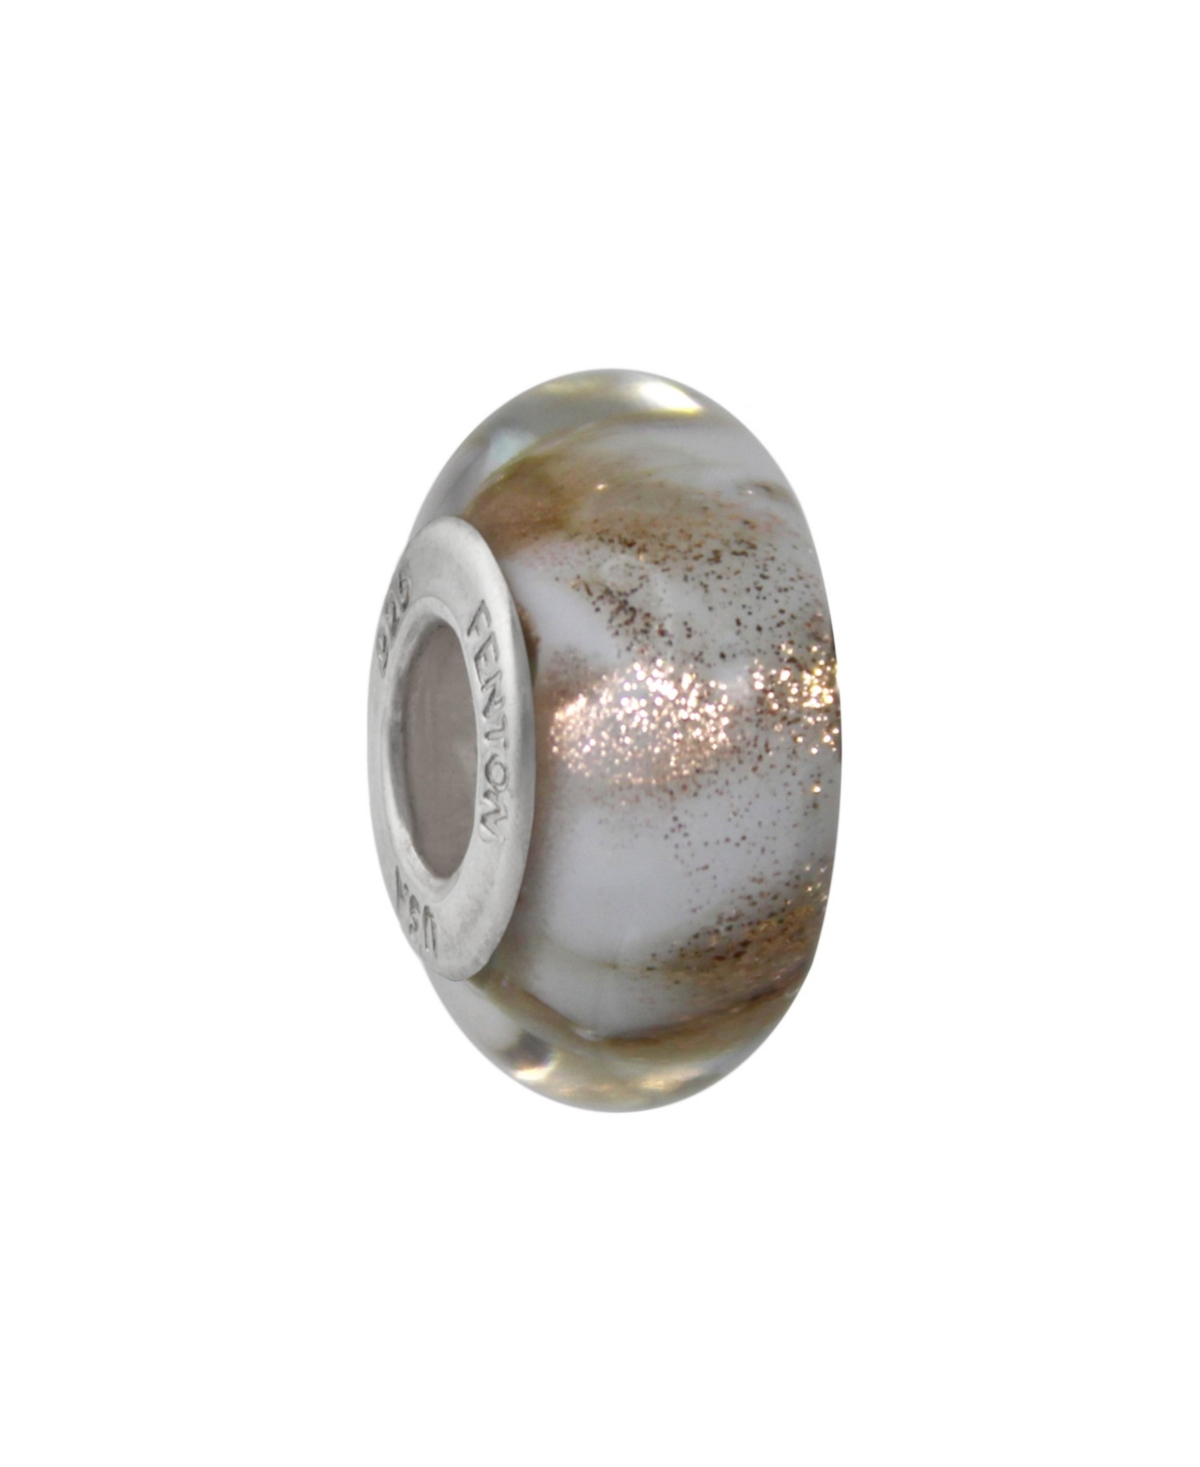 Glass Jewelry: Vanilla Blossom Glass Charm - Multi-color